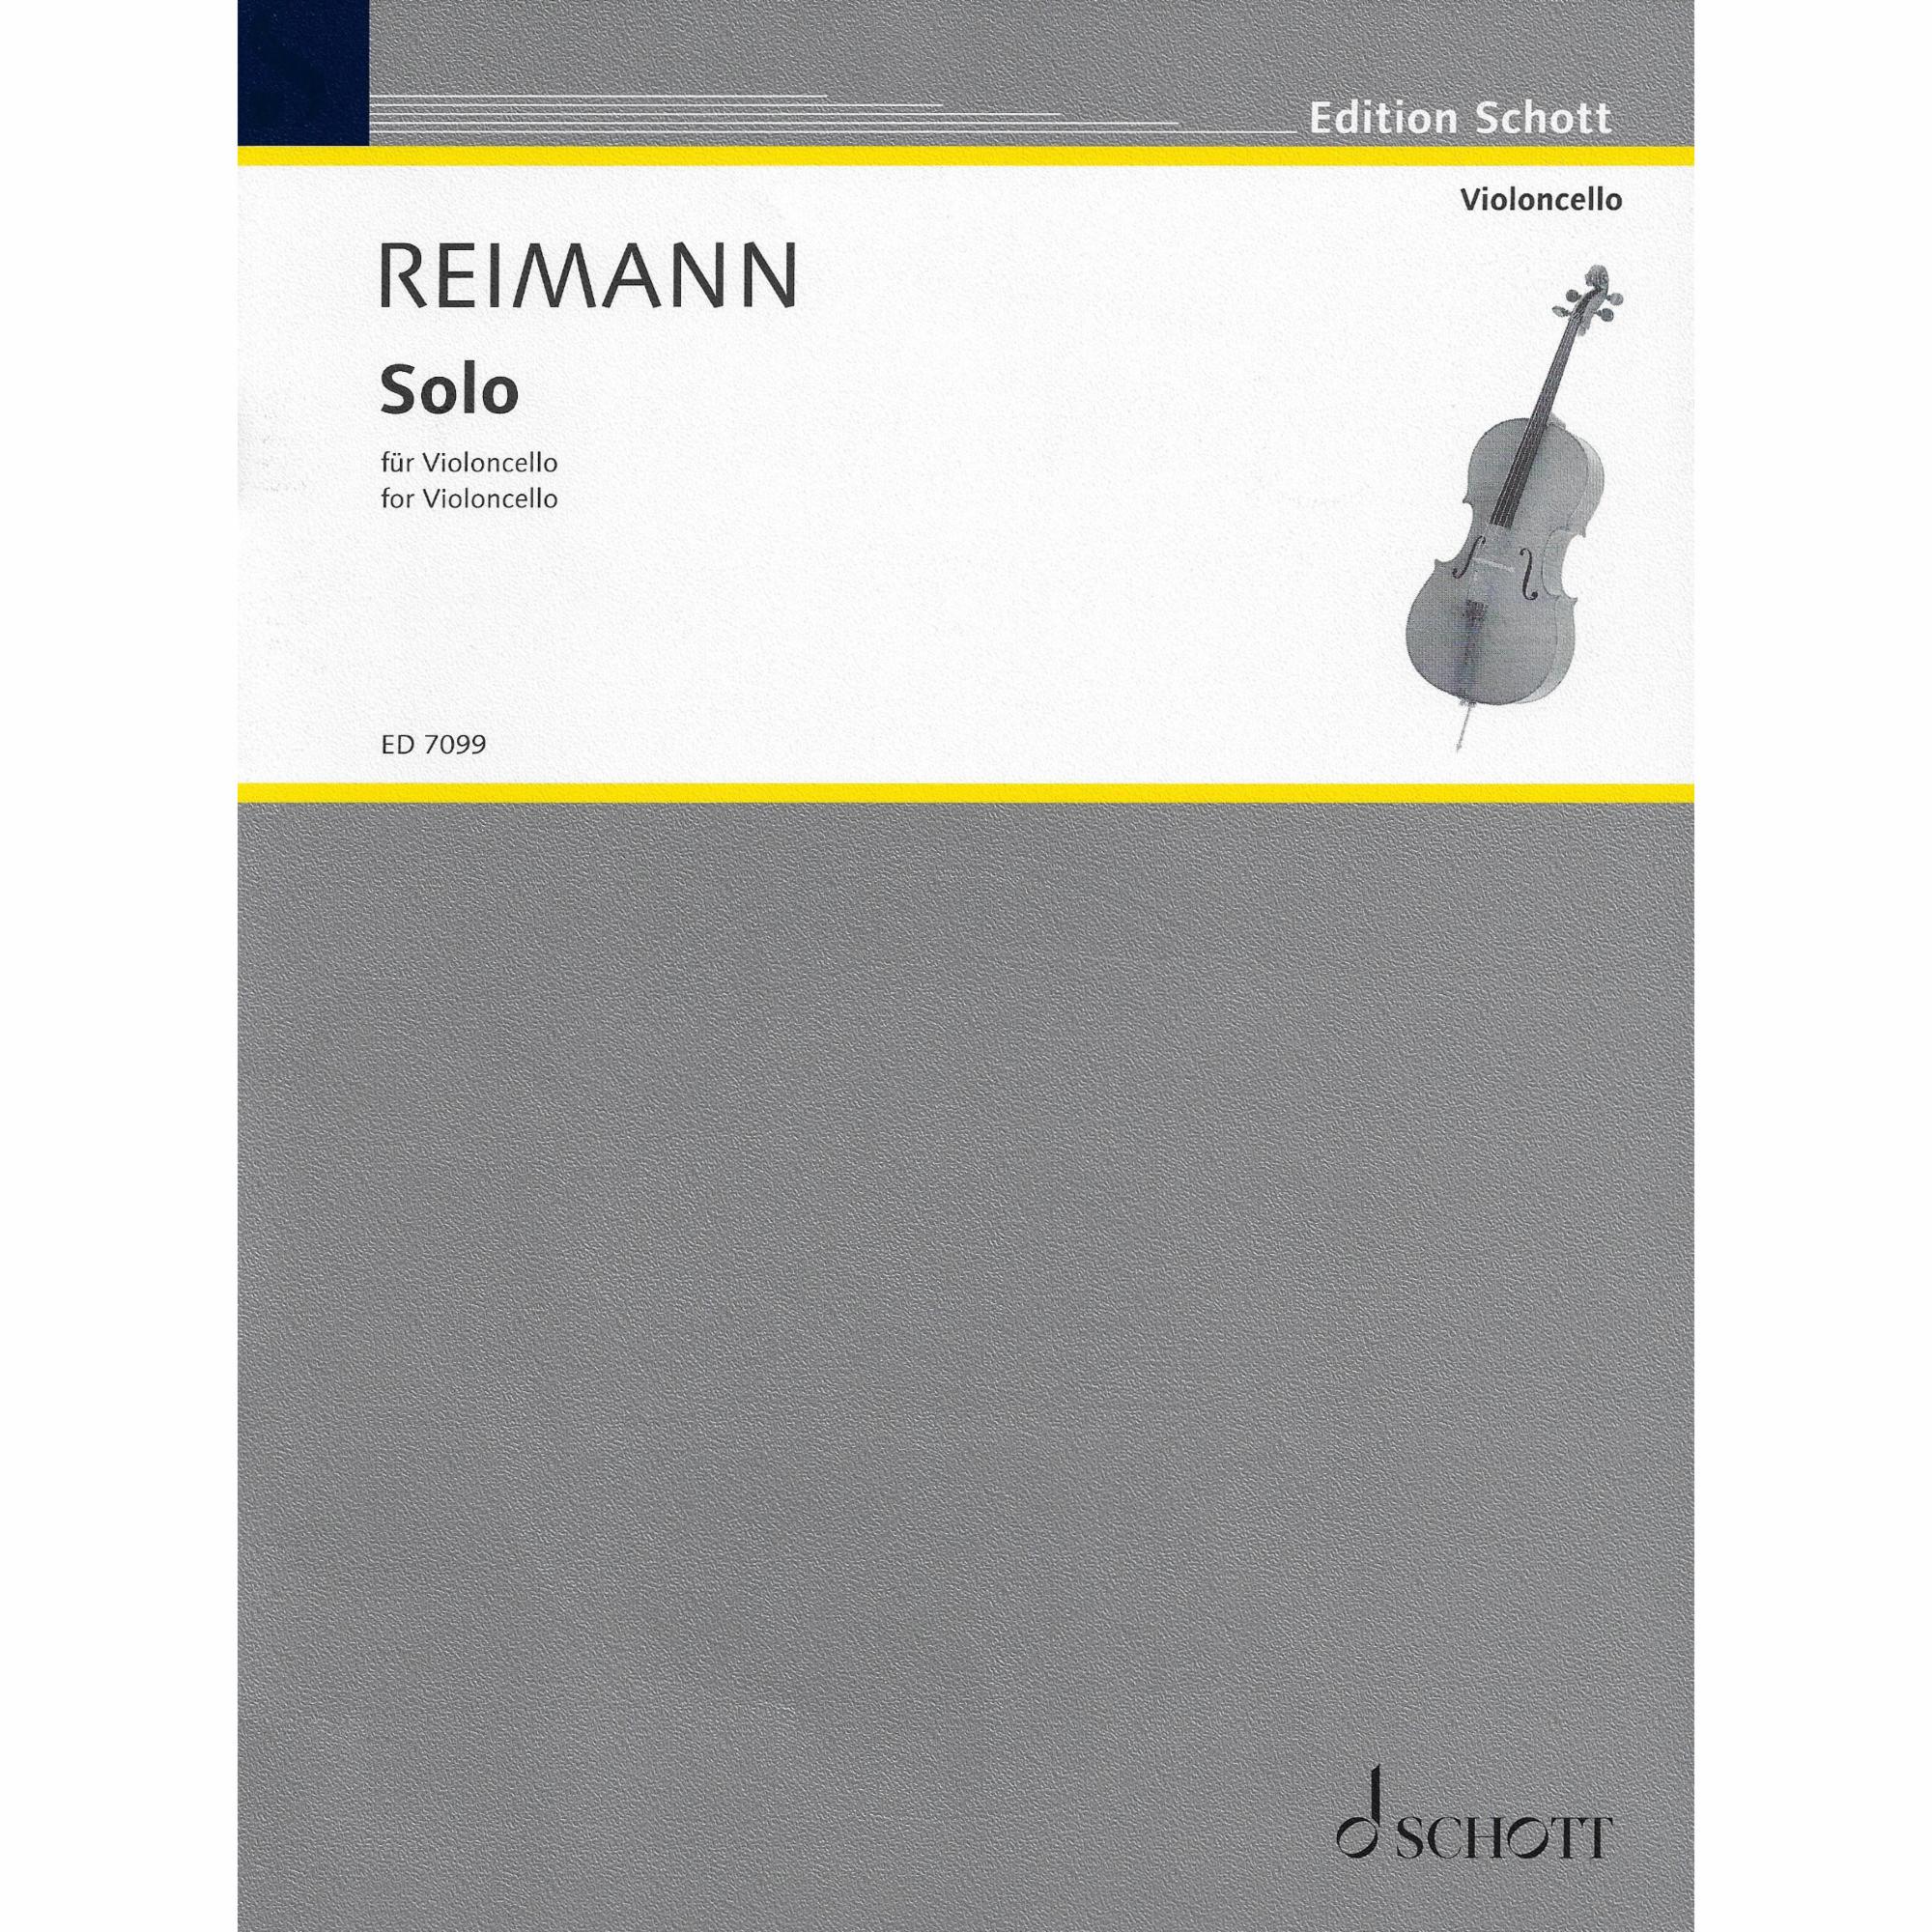 Reimann -- Solo for Solo Cello